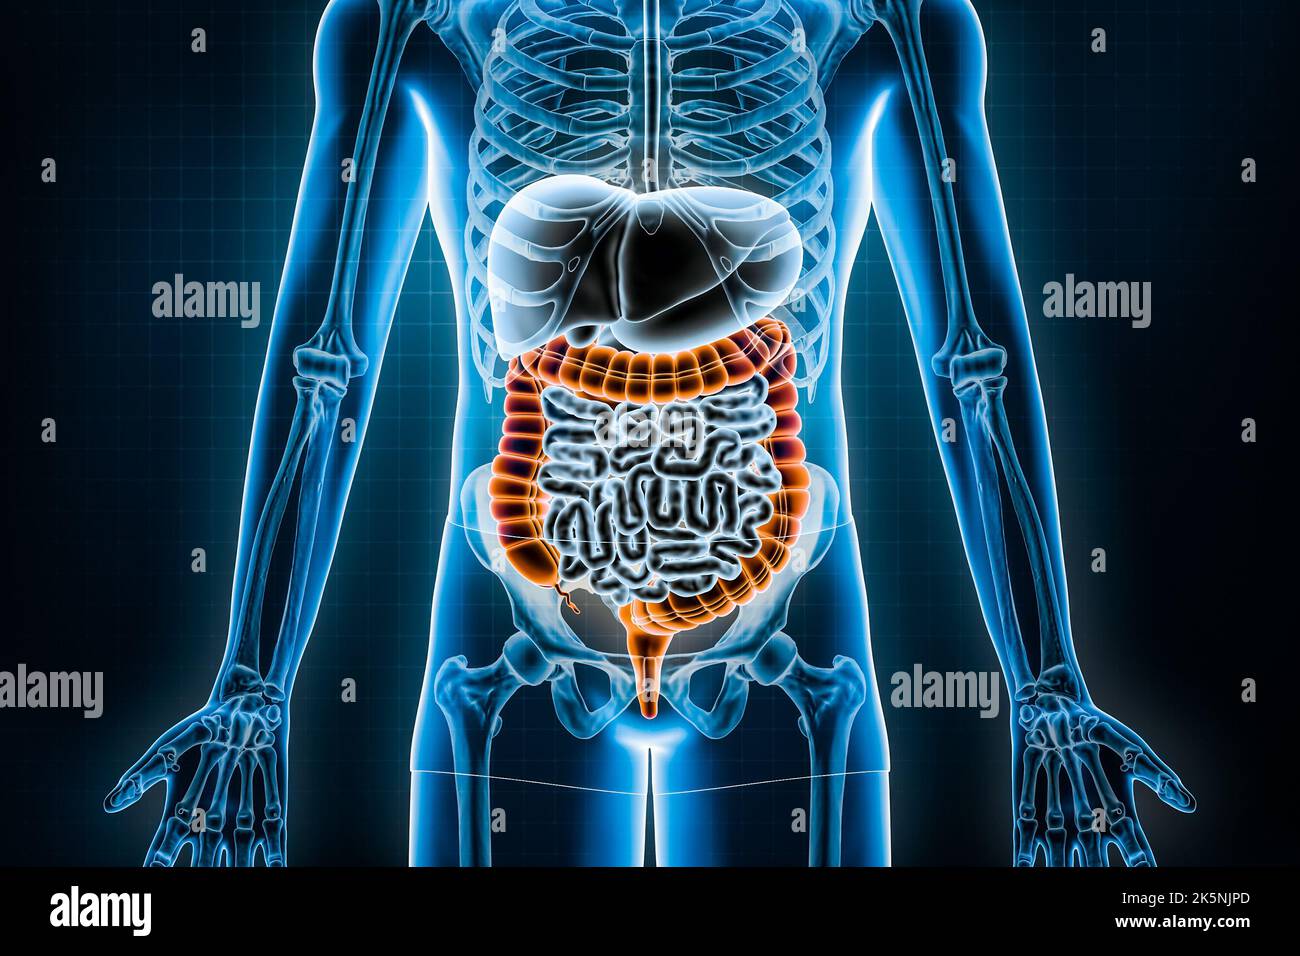 Illustration du rendu du gros intestin 3D. Vue antérieure ou avant du système digestif humain et du tractus gastro-intestinal ou des entrailles. Anatomie, médical Banque D'Images